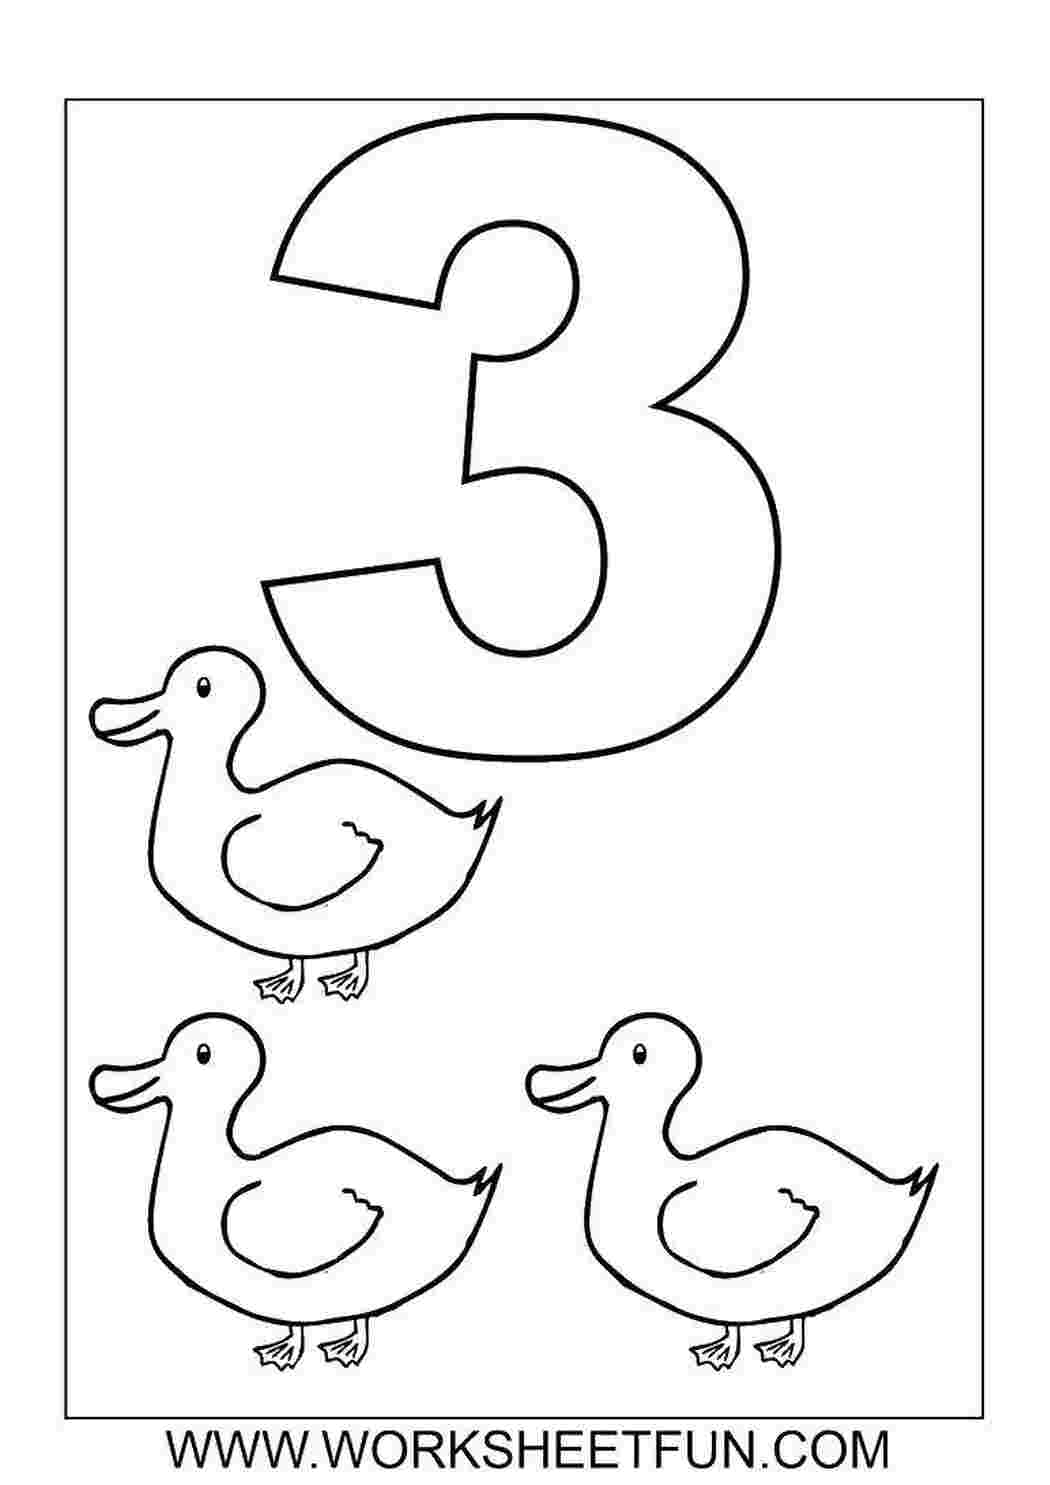 Раскраски цифры от 1 до 3 для детей | 24 раскрасок